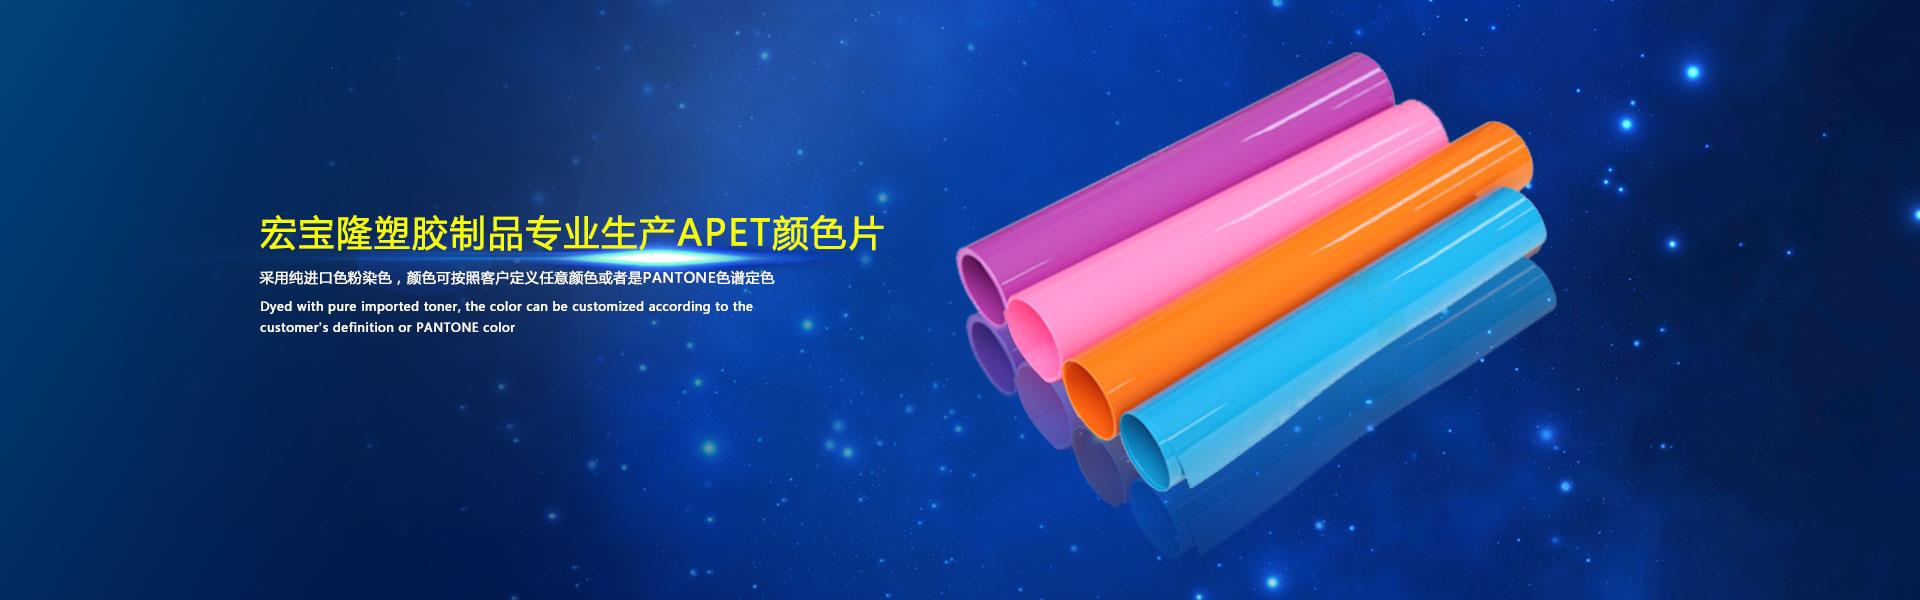 宏宝隆采用先进设备专业生产APET和颜色片